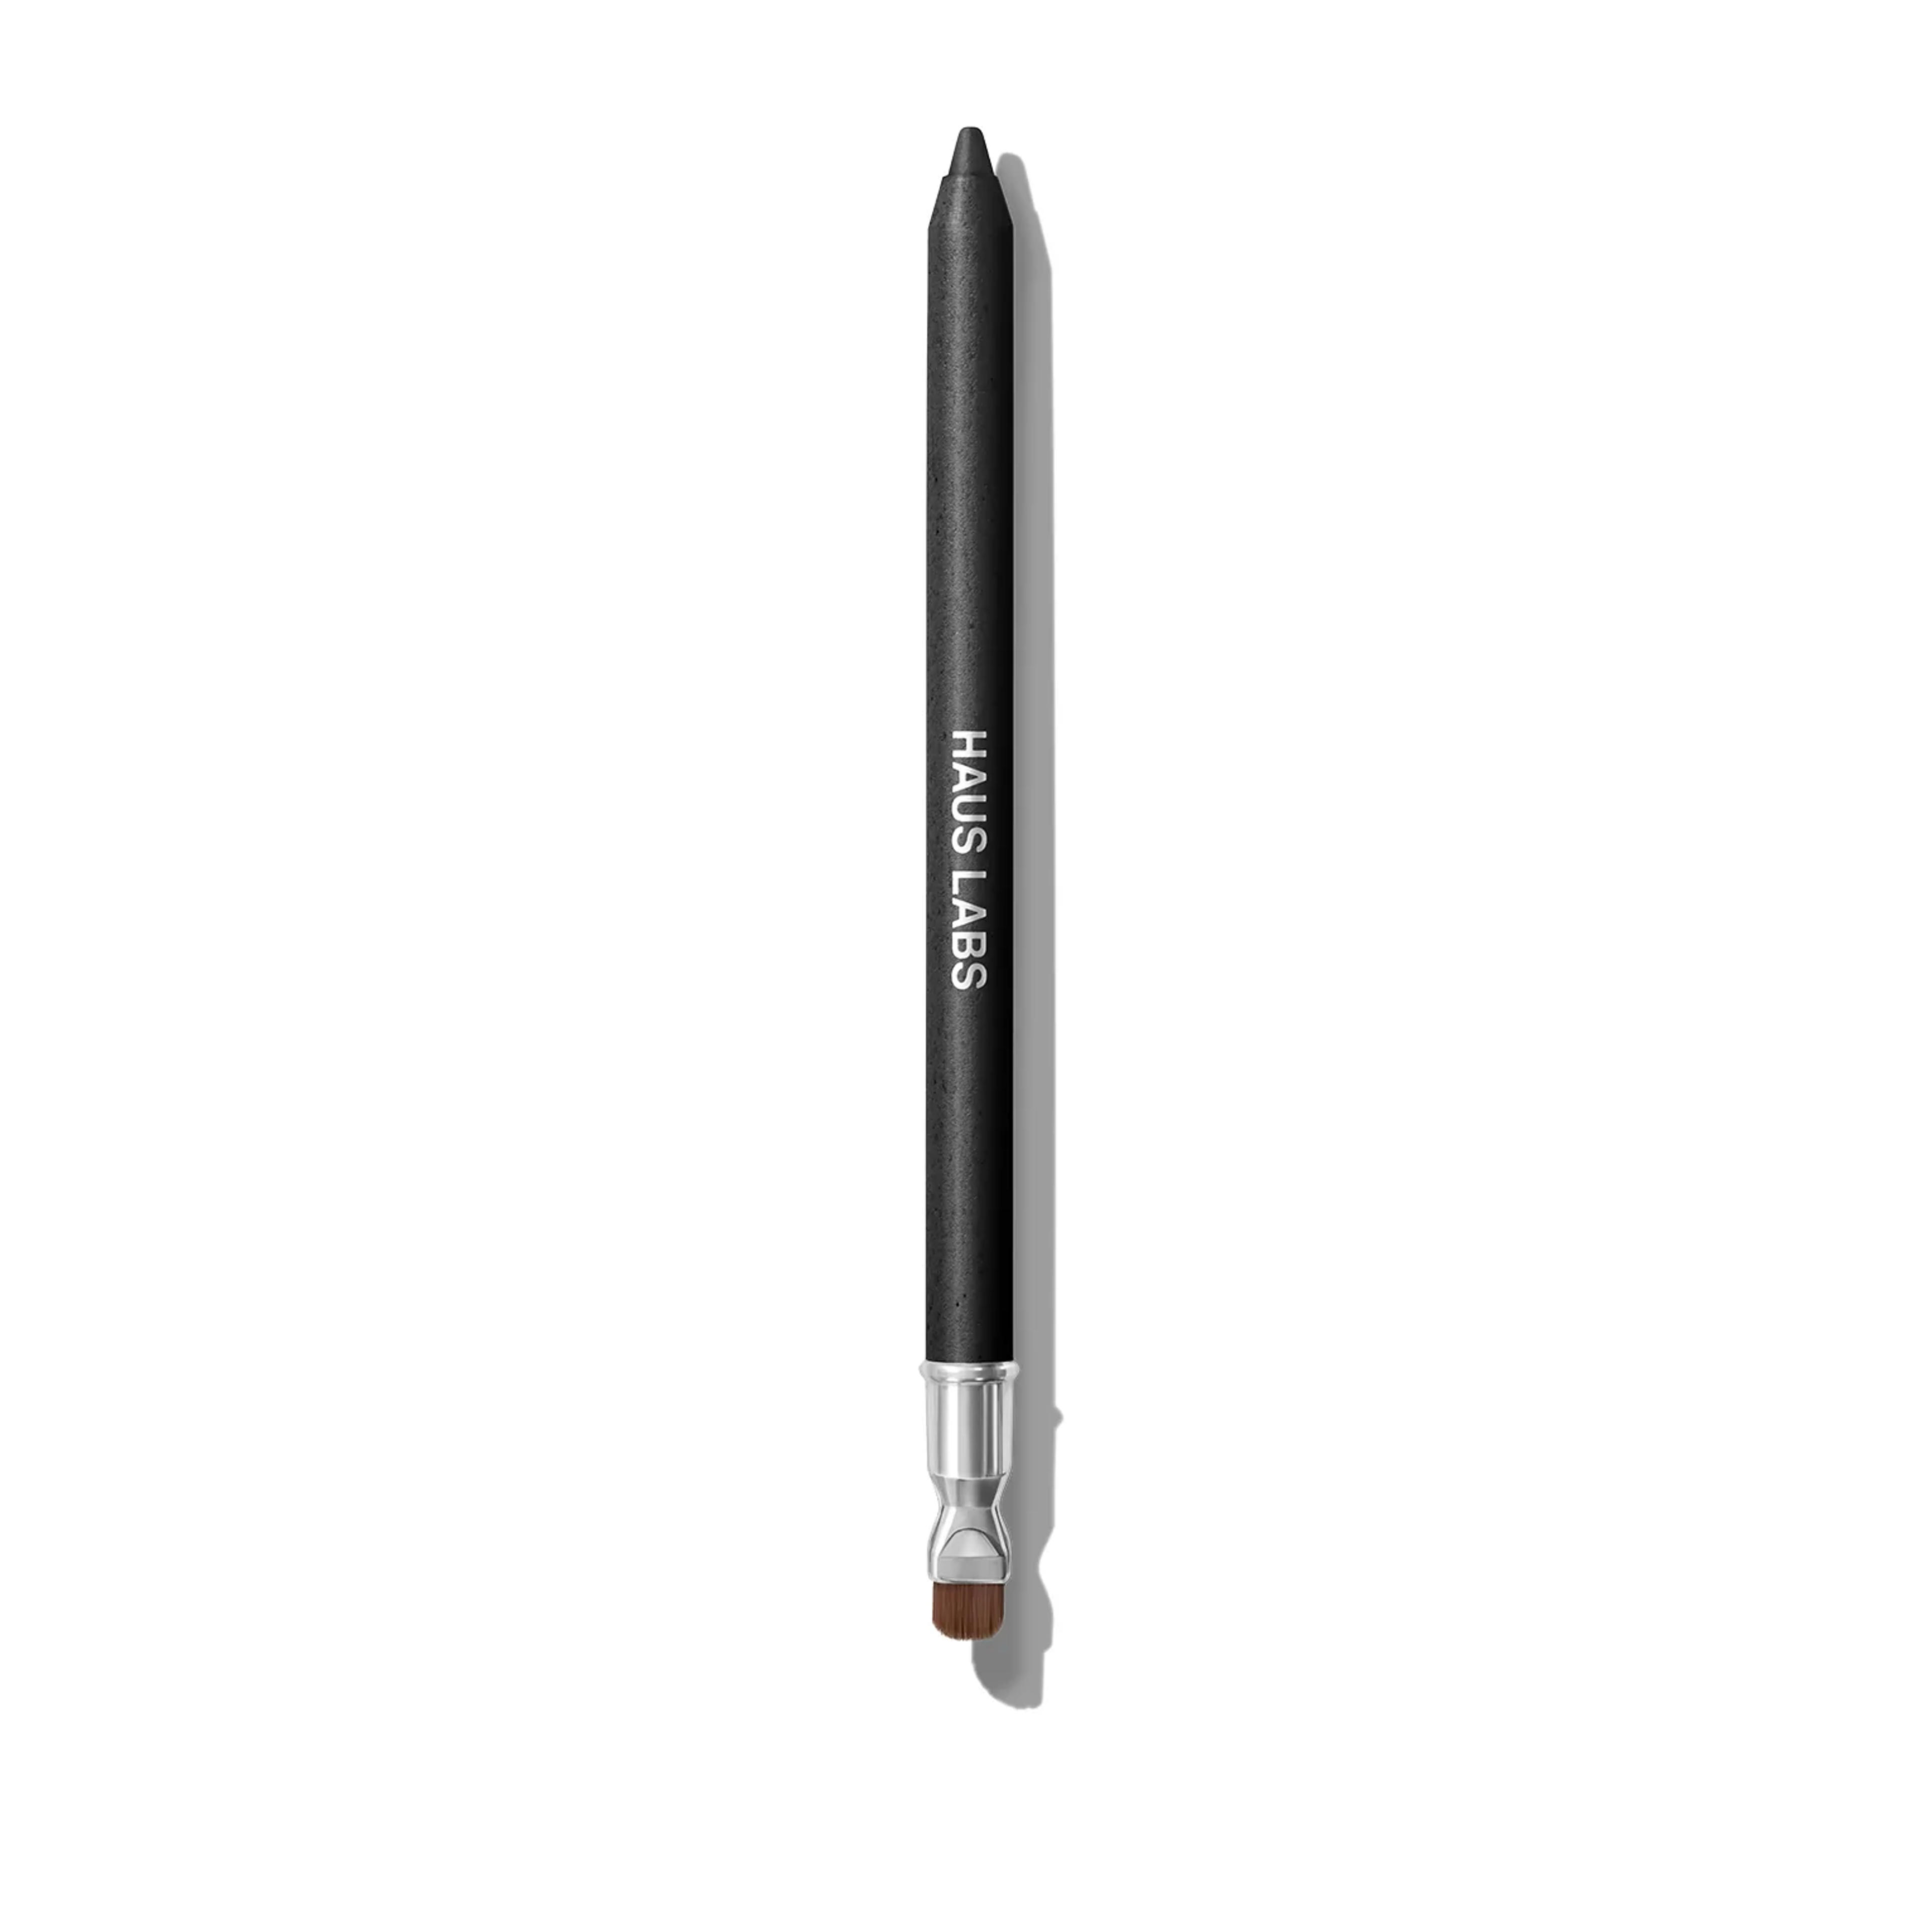 Clean Waterproof Gel Pencil Eyeliner | HausLabs.com - HAUS LABS BY LADY GAGA